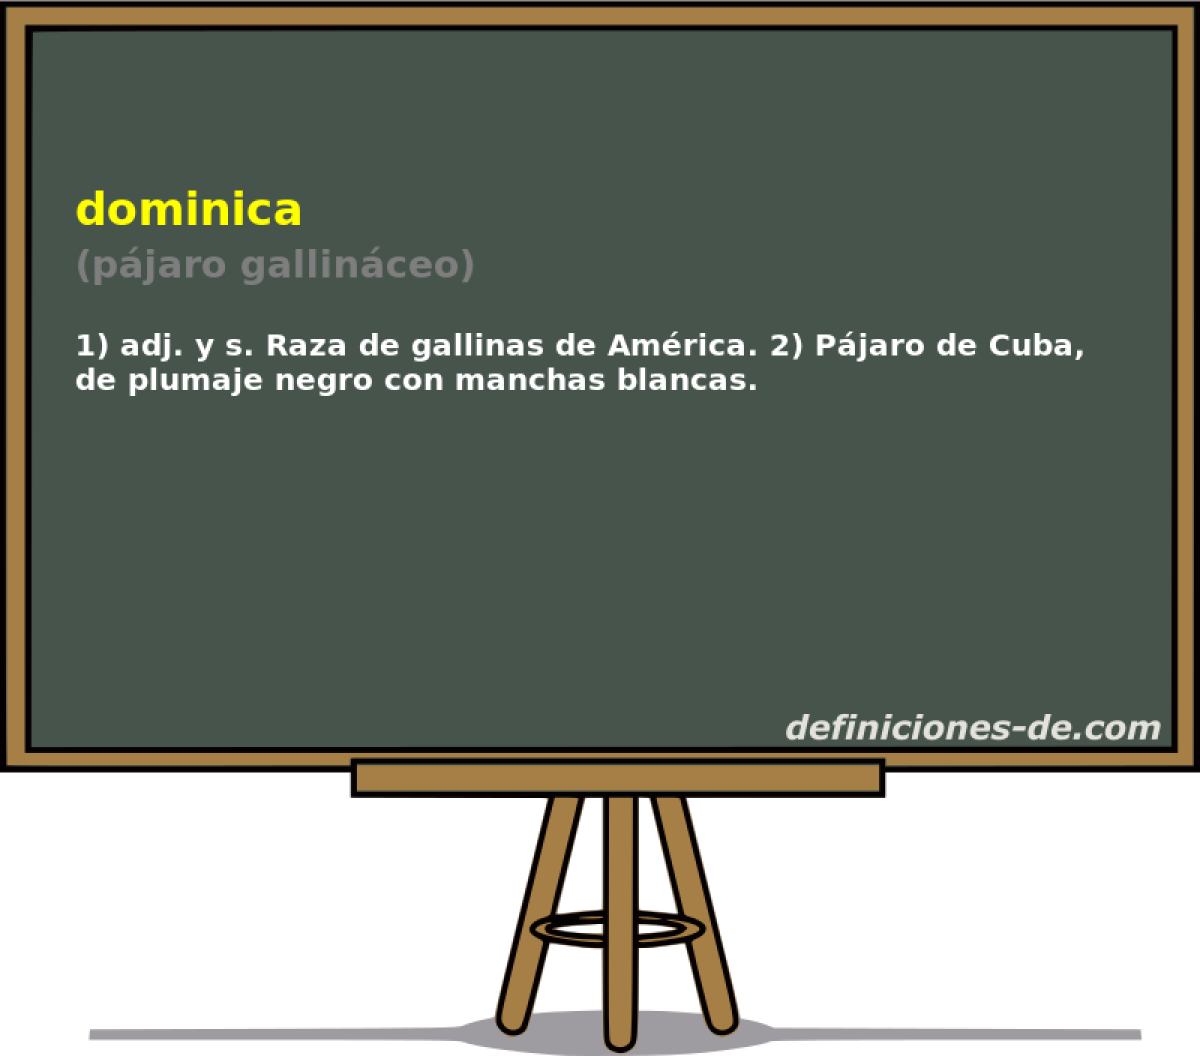 dominica (pjaro gallinceo)